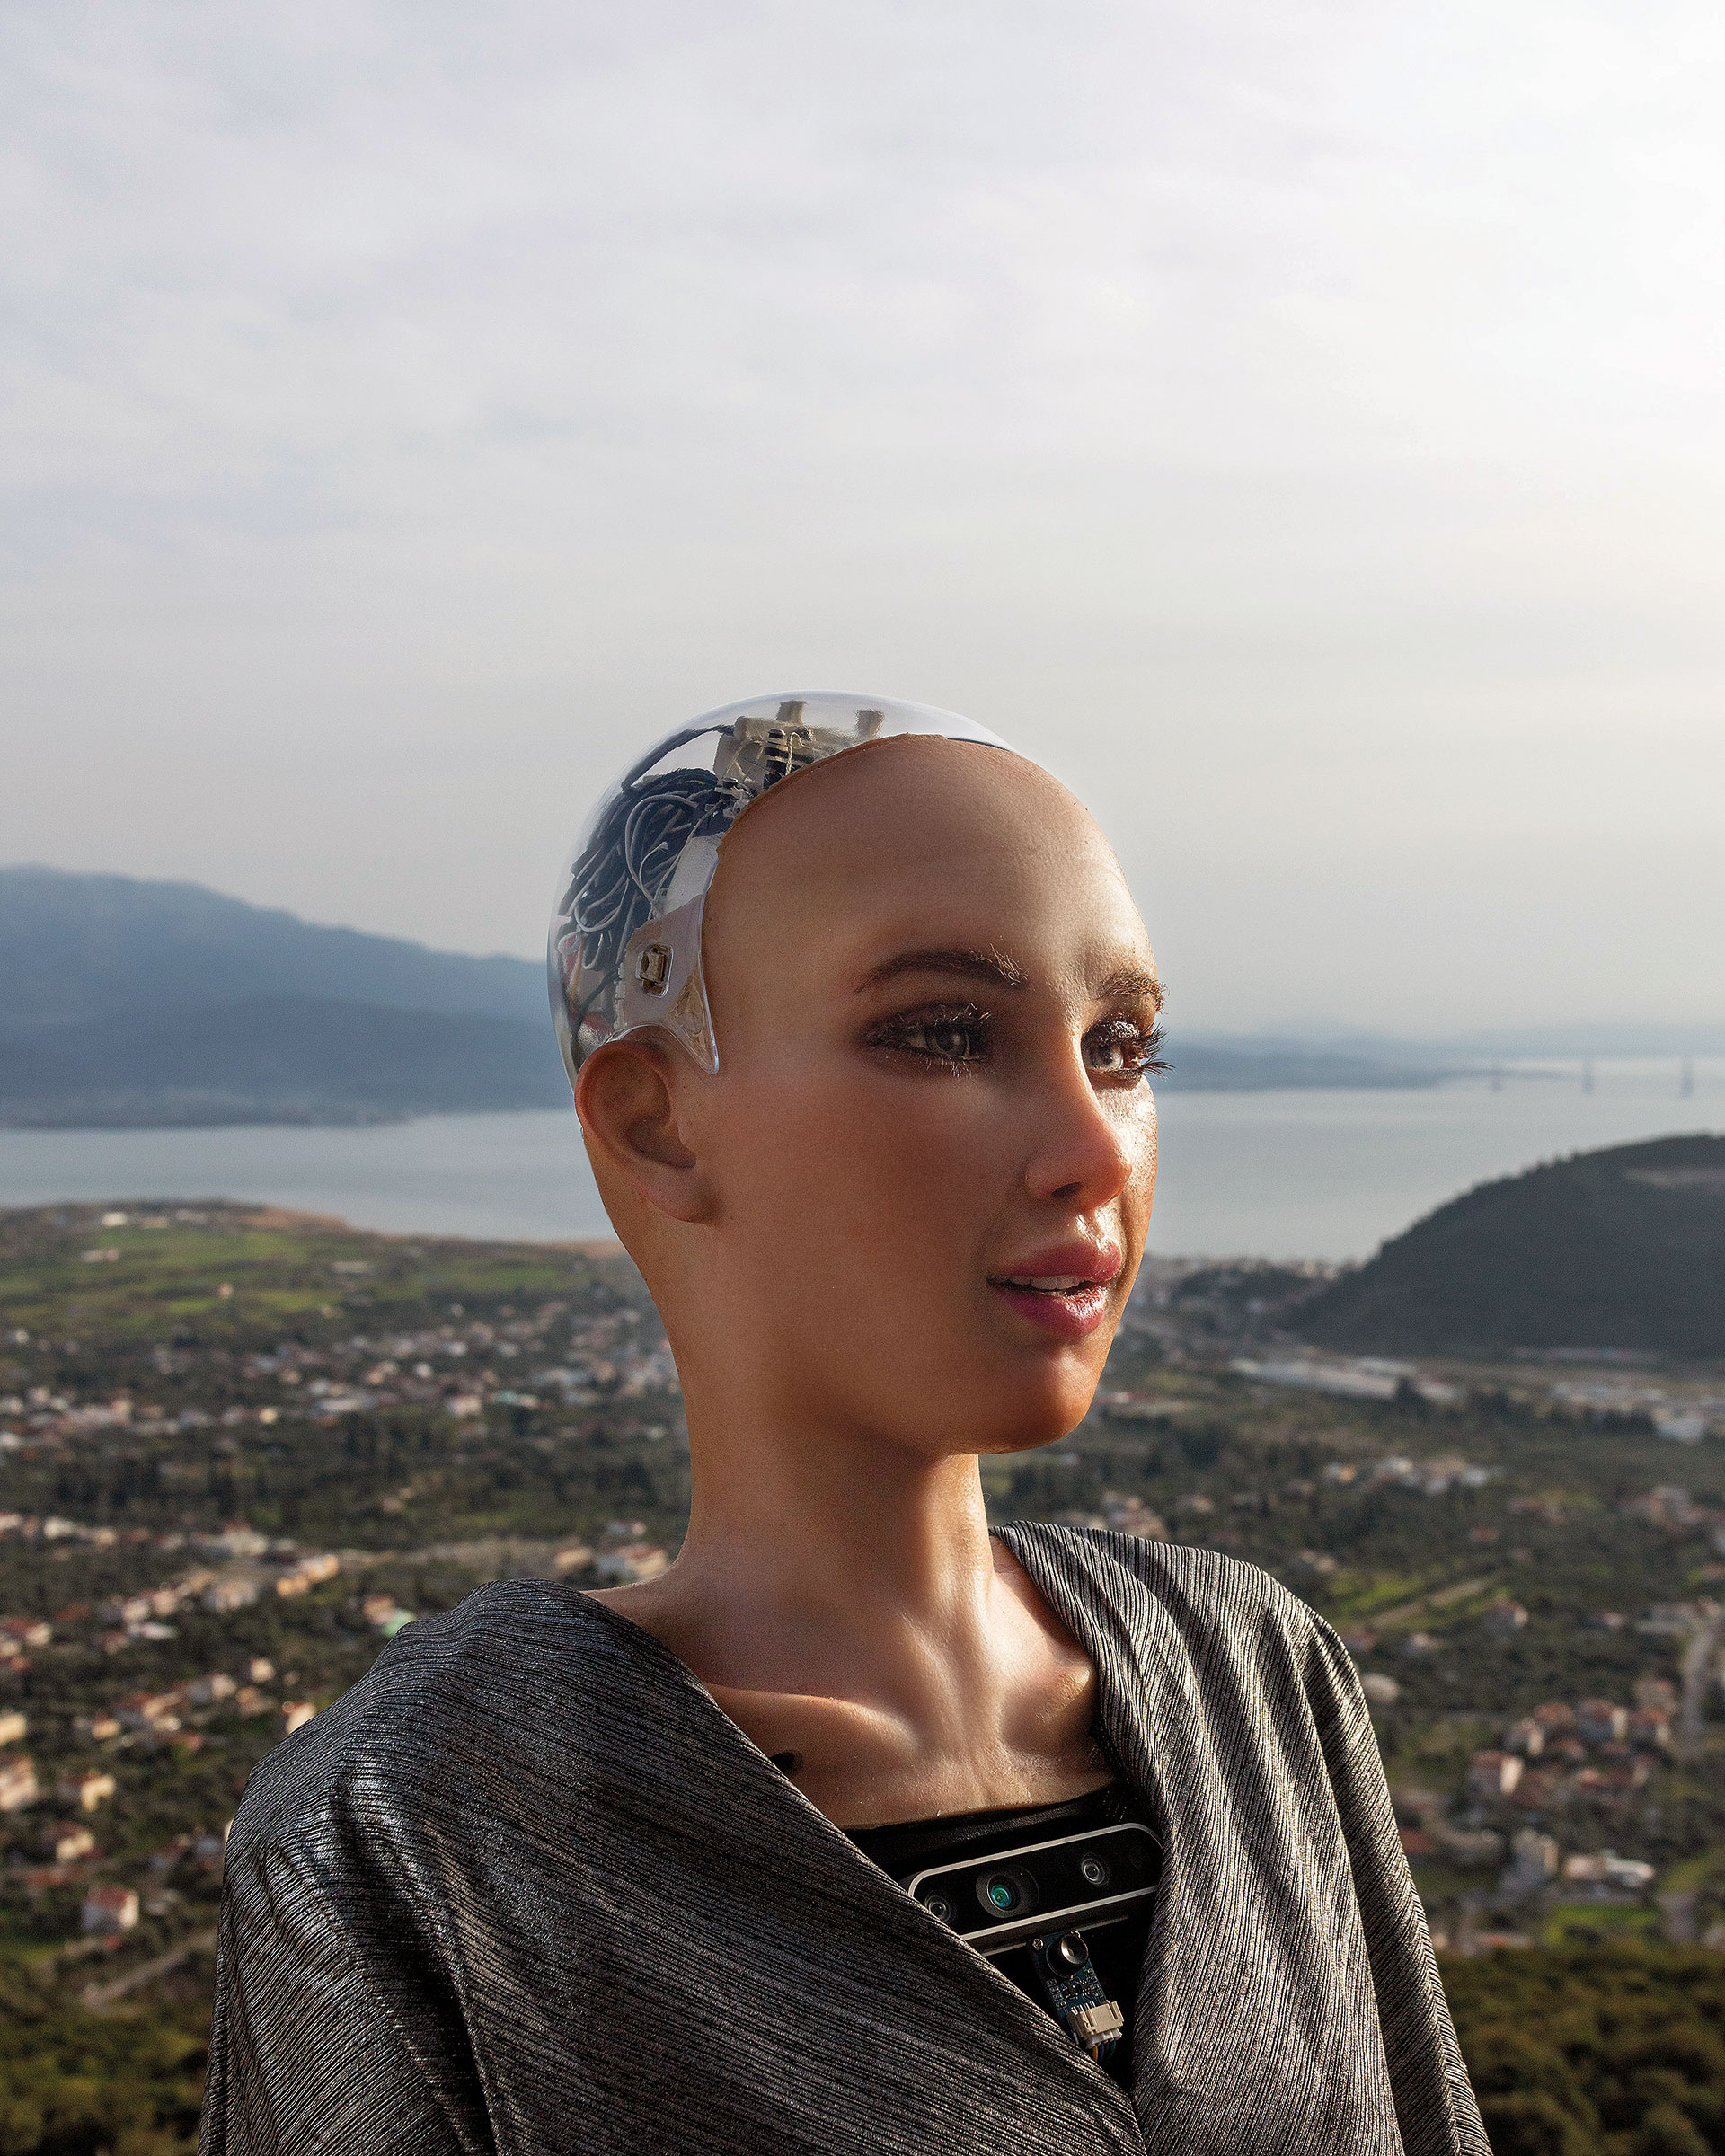 Συναντήσαμε τη Σοφία, το διασημότερο ρομπότ στον πλανήτη-2